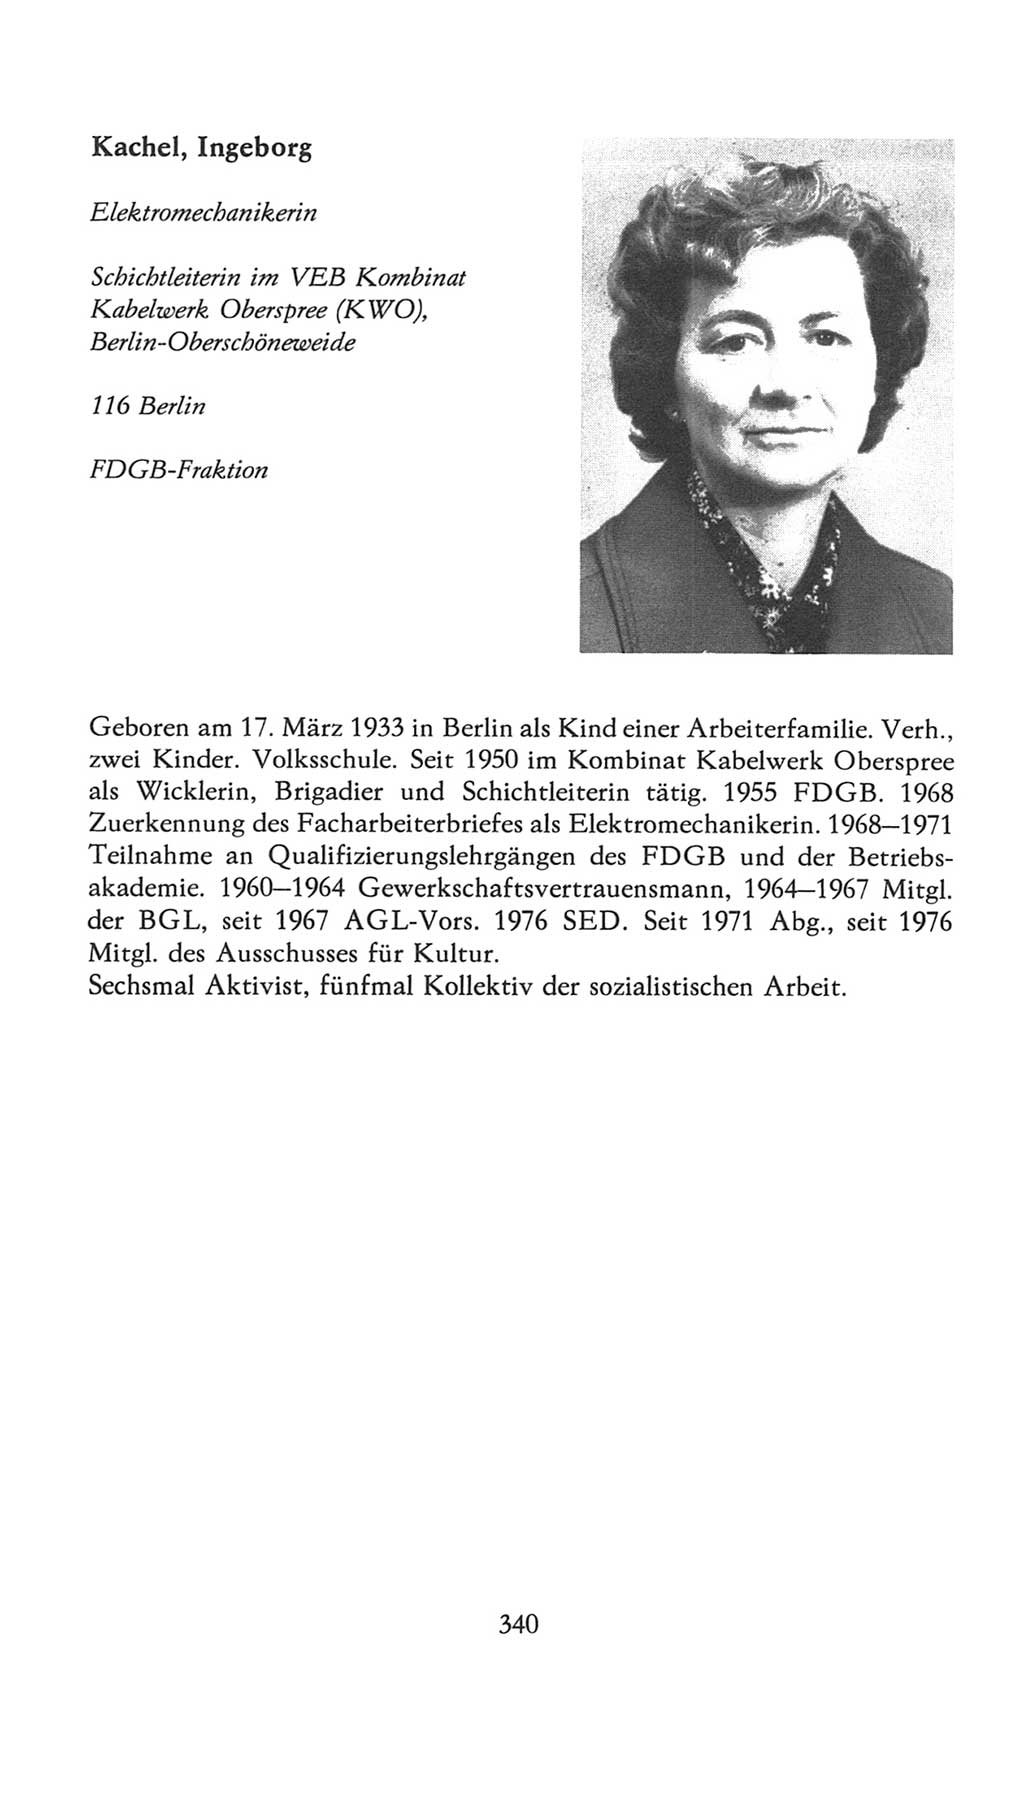 Volkskammer (VK) der Deutschen Demokratischen Republik (DDR), 7. Wahlperiode 1976-1981, Seite 340 (VK. DDR 7. WP. 1976-1981, S. 340)